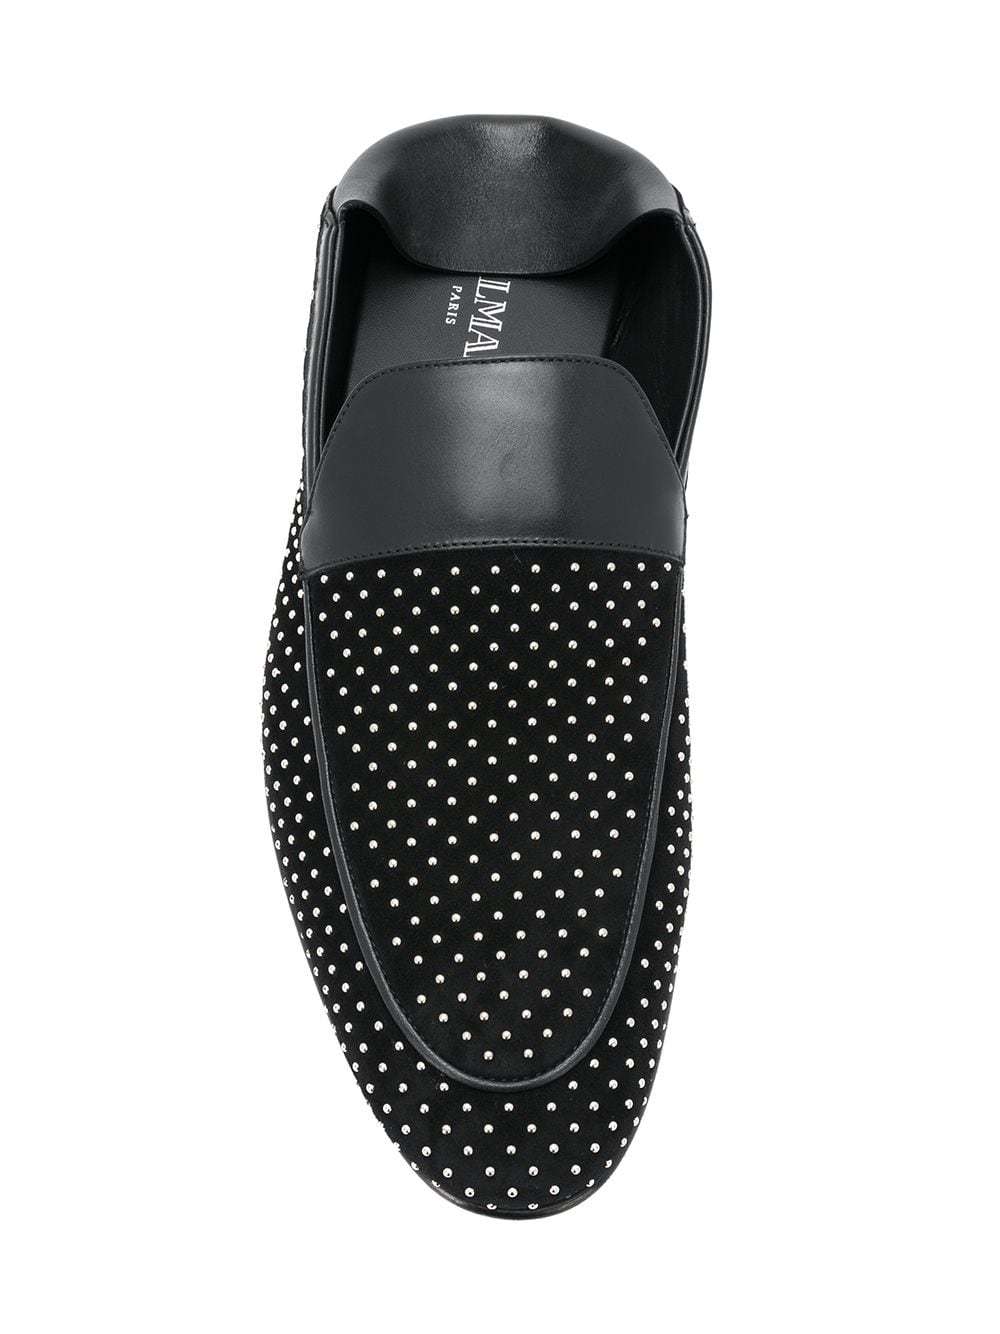 Voorlopige Vriendin Interactie Balmain Studded Loafers, $802 | farfetch.com | Lookastic